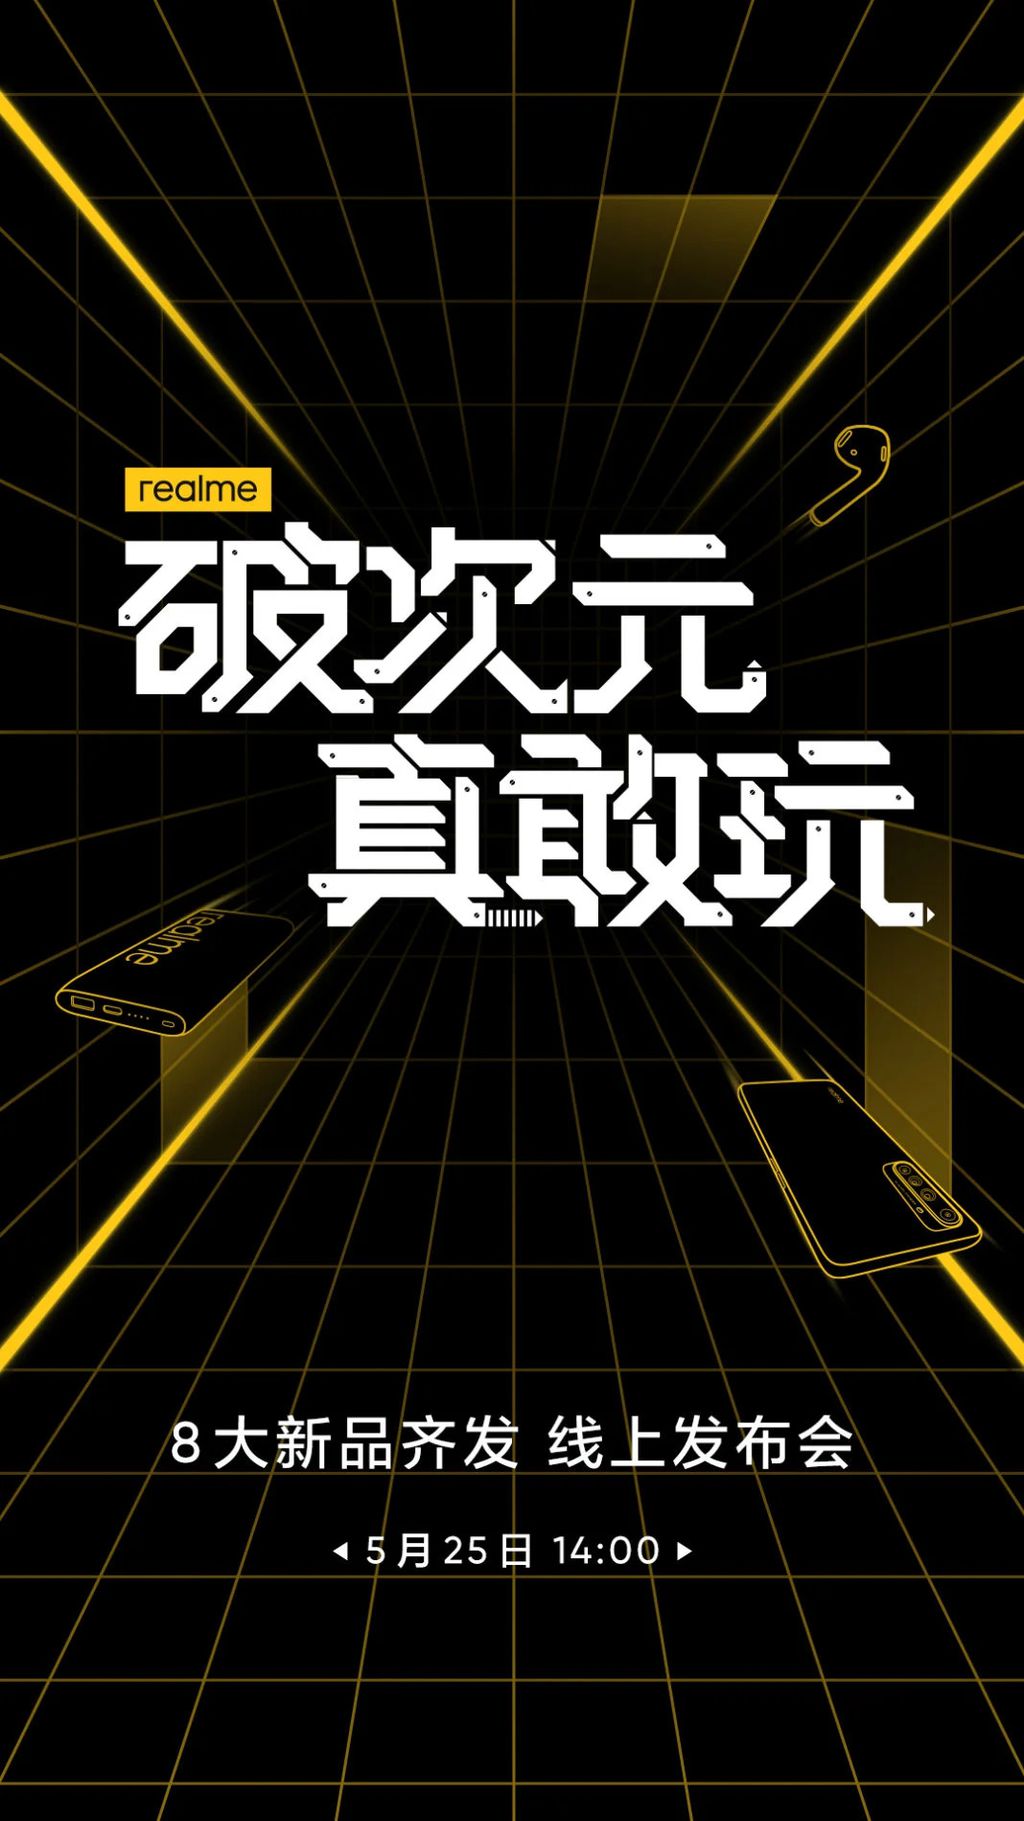 Evento da Realme apresentará 8 produtos para o mercado chinês (Foto: Reprodução/Weibo)